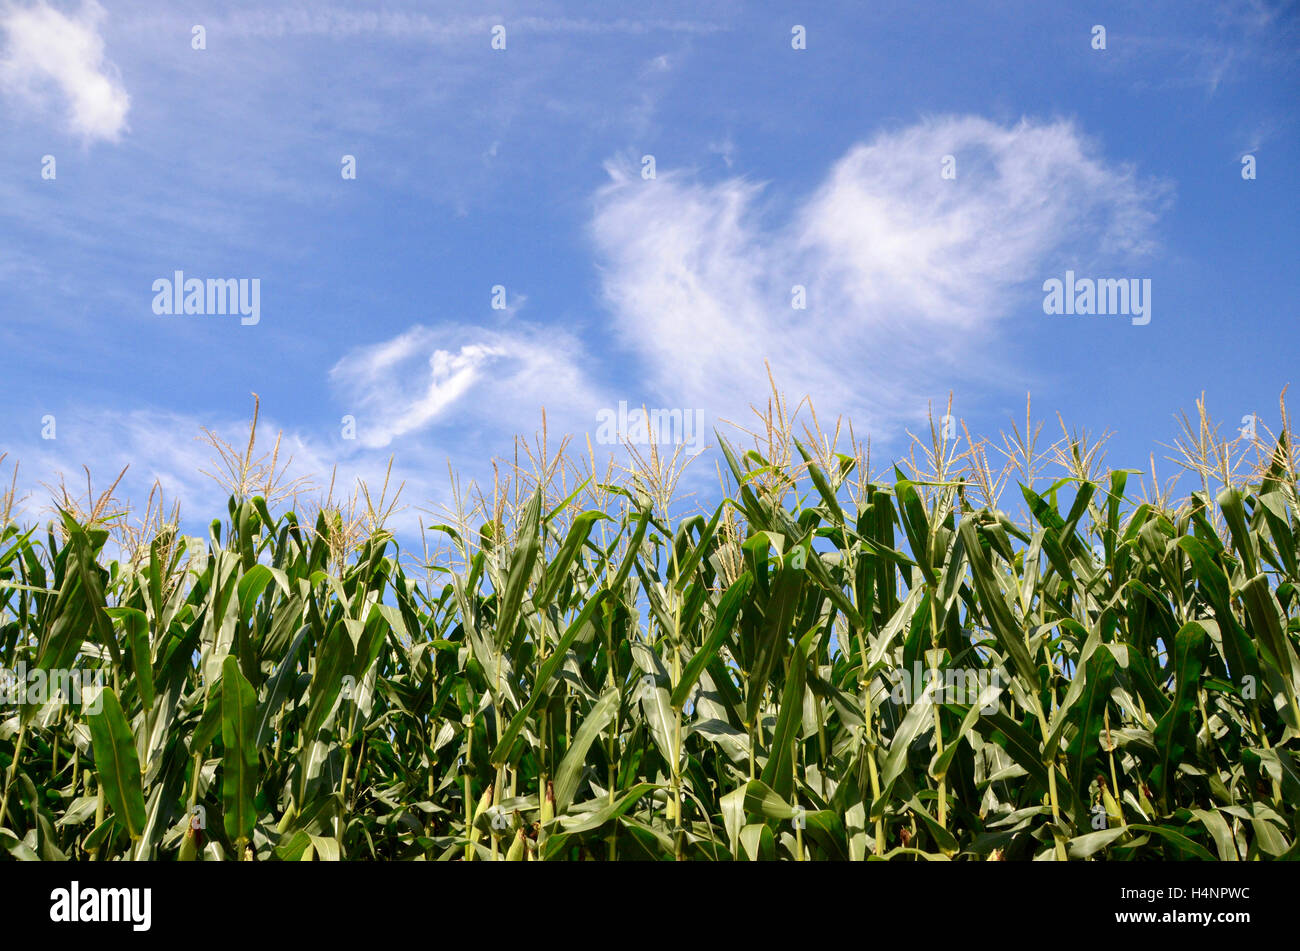 País amish Pennsylvania USA el maíz dulce campo de cultivo con el cielo azul y tenues nubes cirros simon leigh Foto de stock